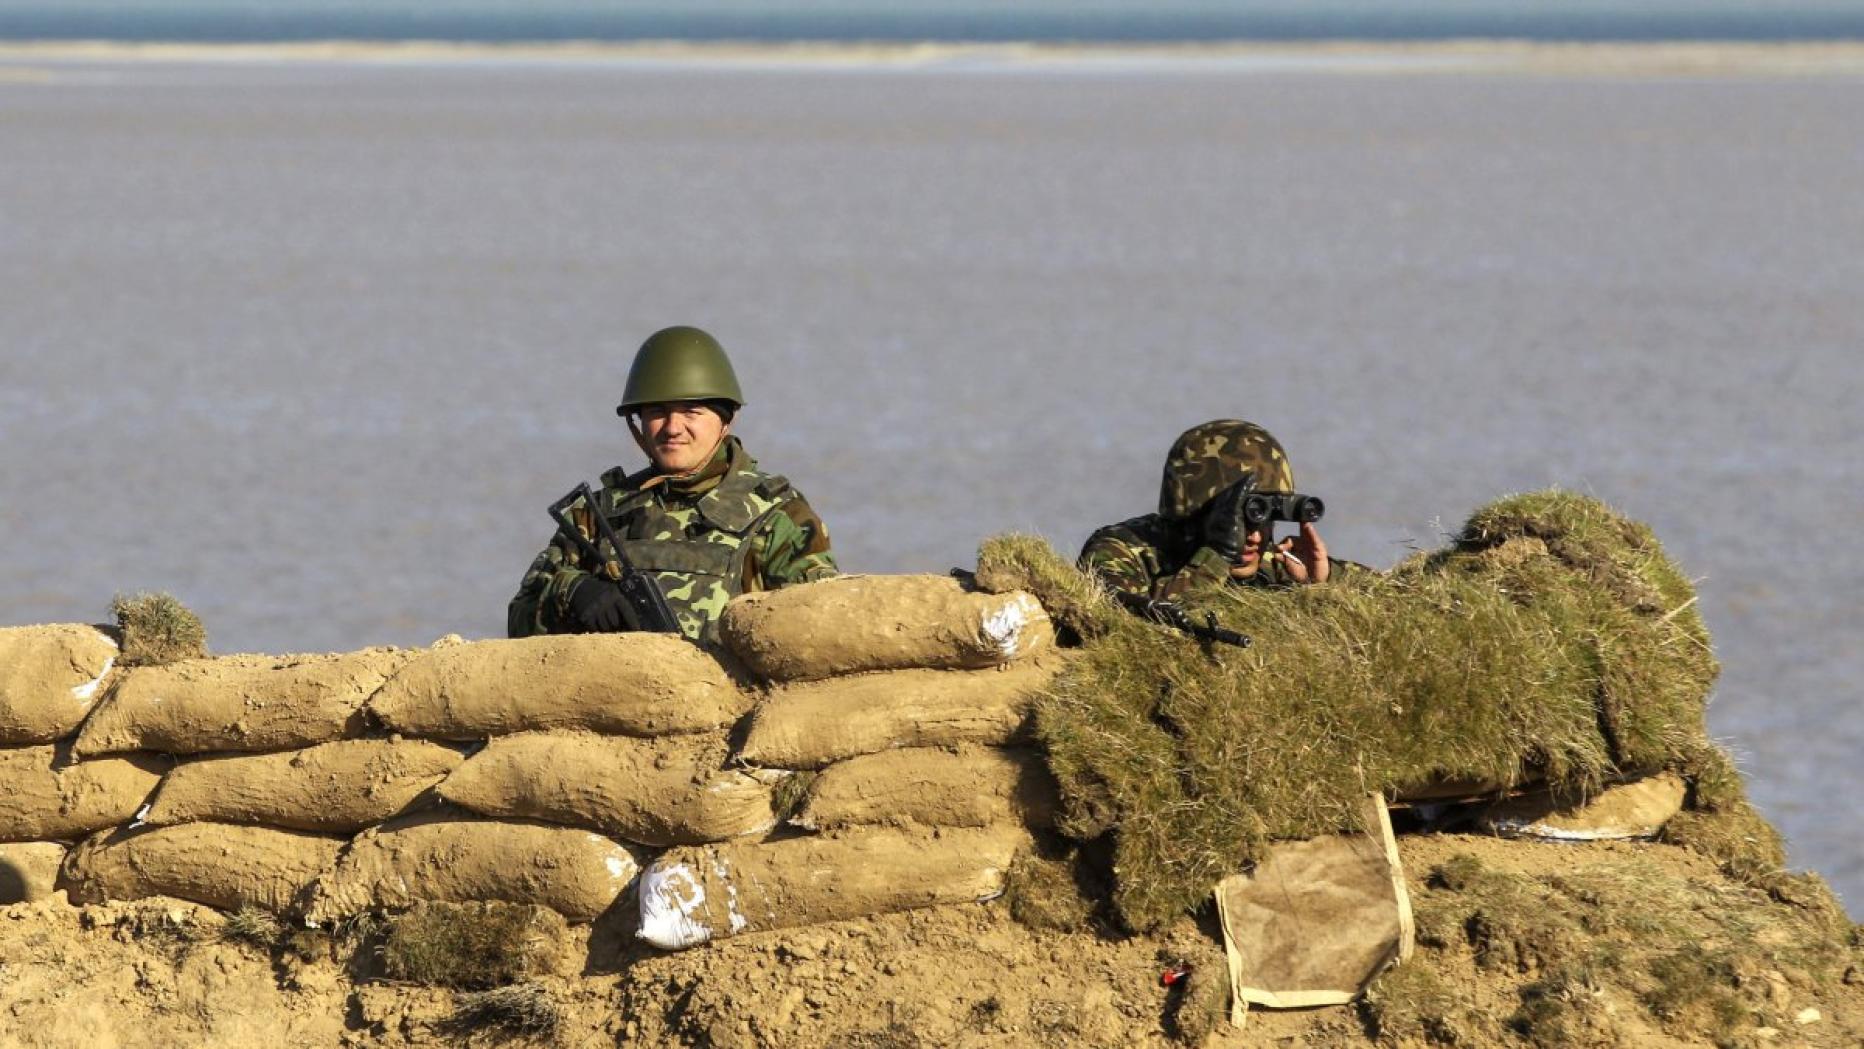 Ukrainisches Militär wehrt russischen Vorstoß ab | kurier.at